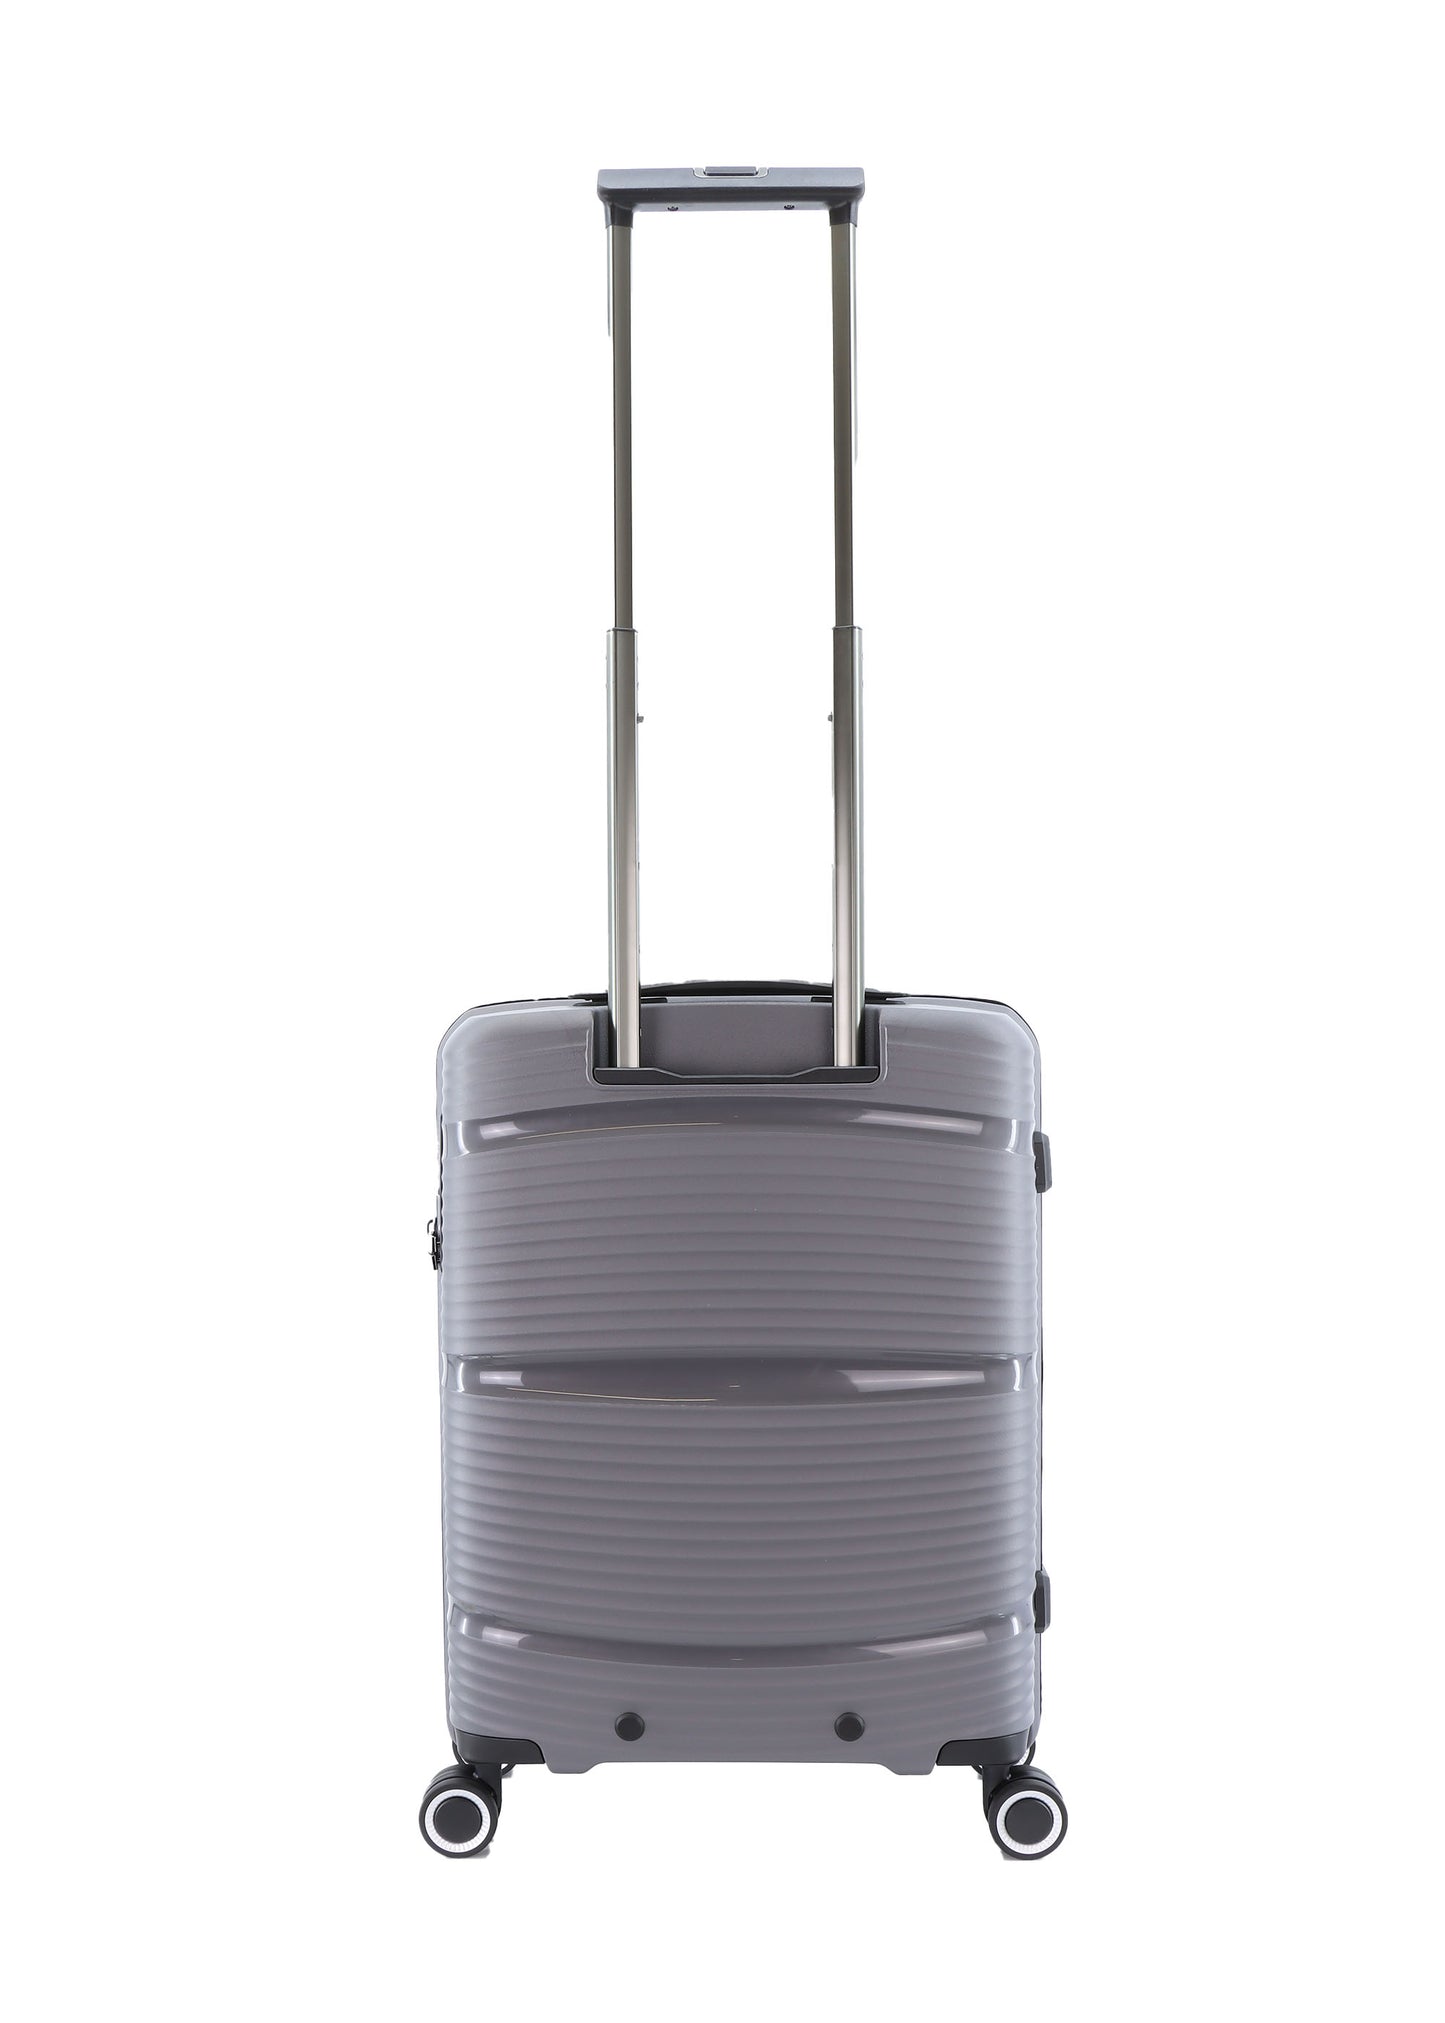 Valise rigide pour bagage à main Saxoline / Trolley / Valise de voyage - 54 cm (Petite) - Taupe